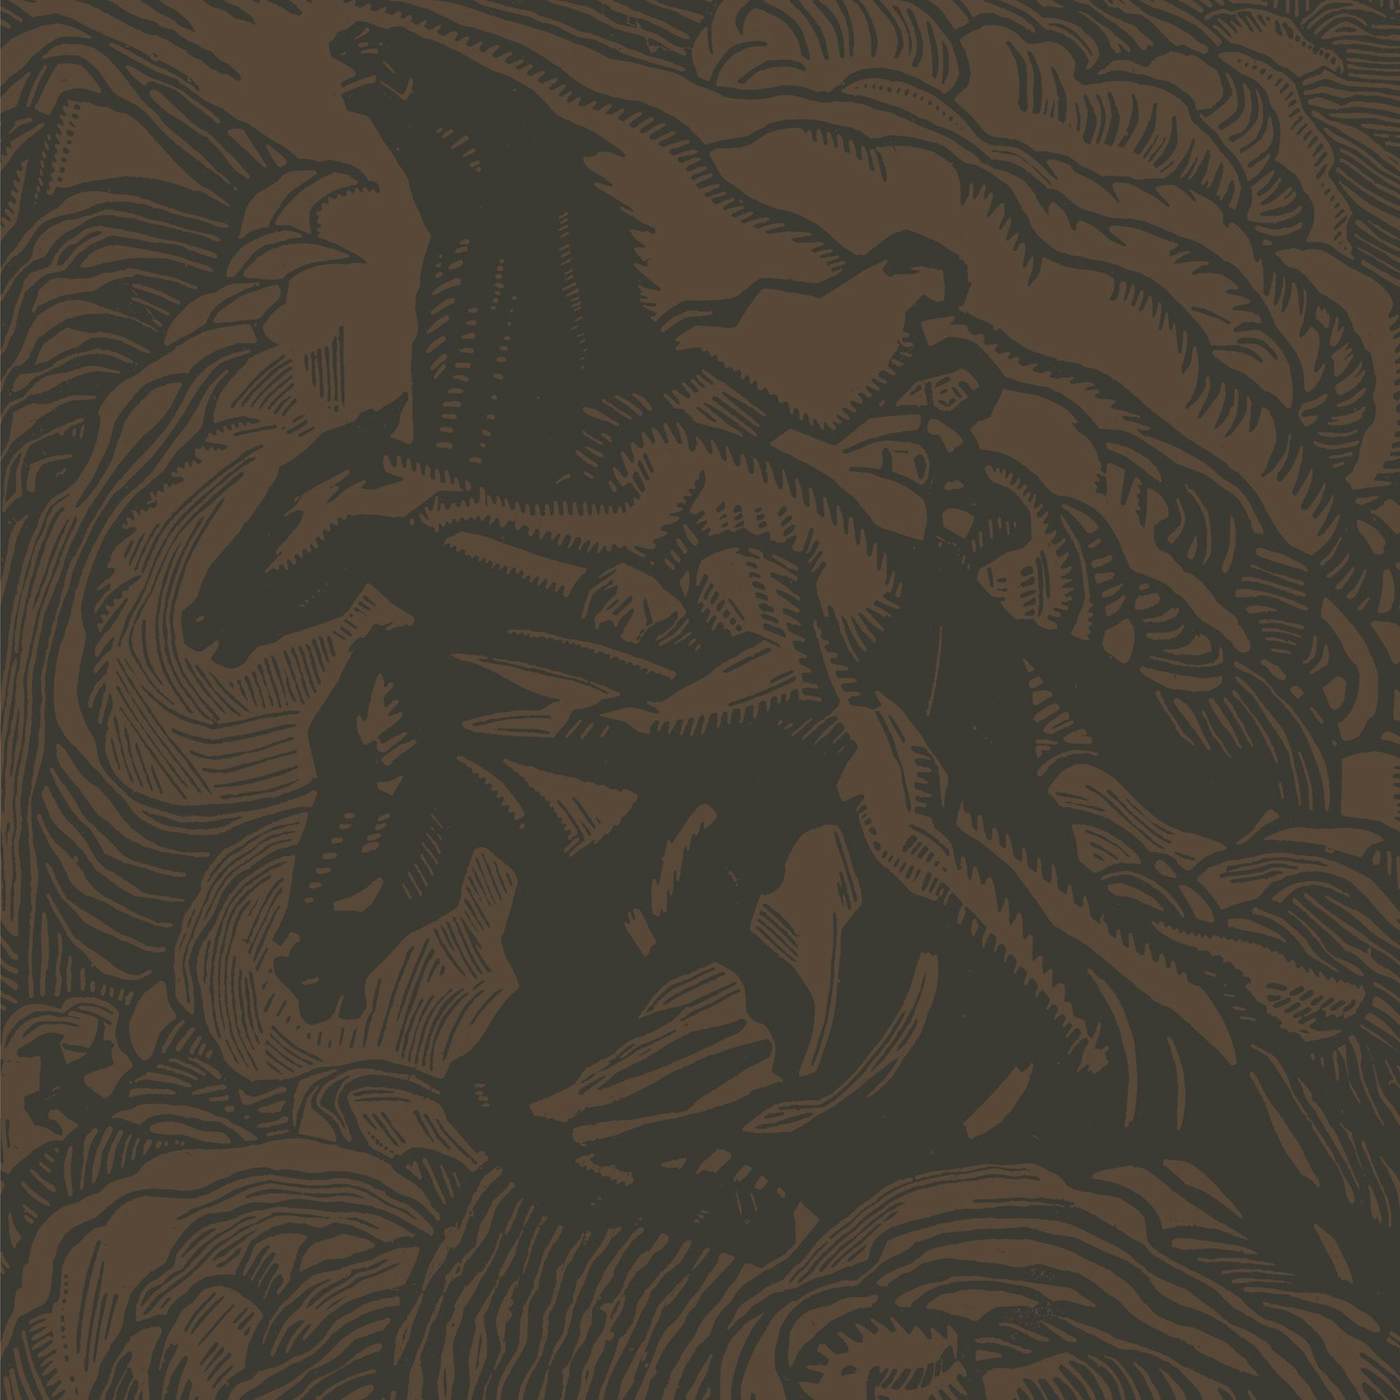 Sunn 0))) Flight Of The Behemoth Vinyl Record